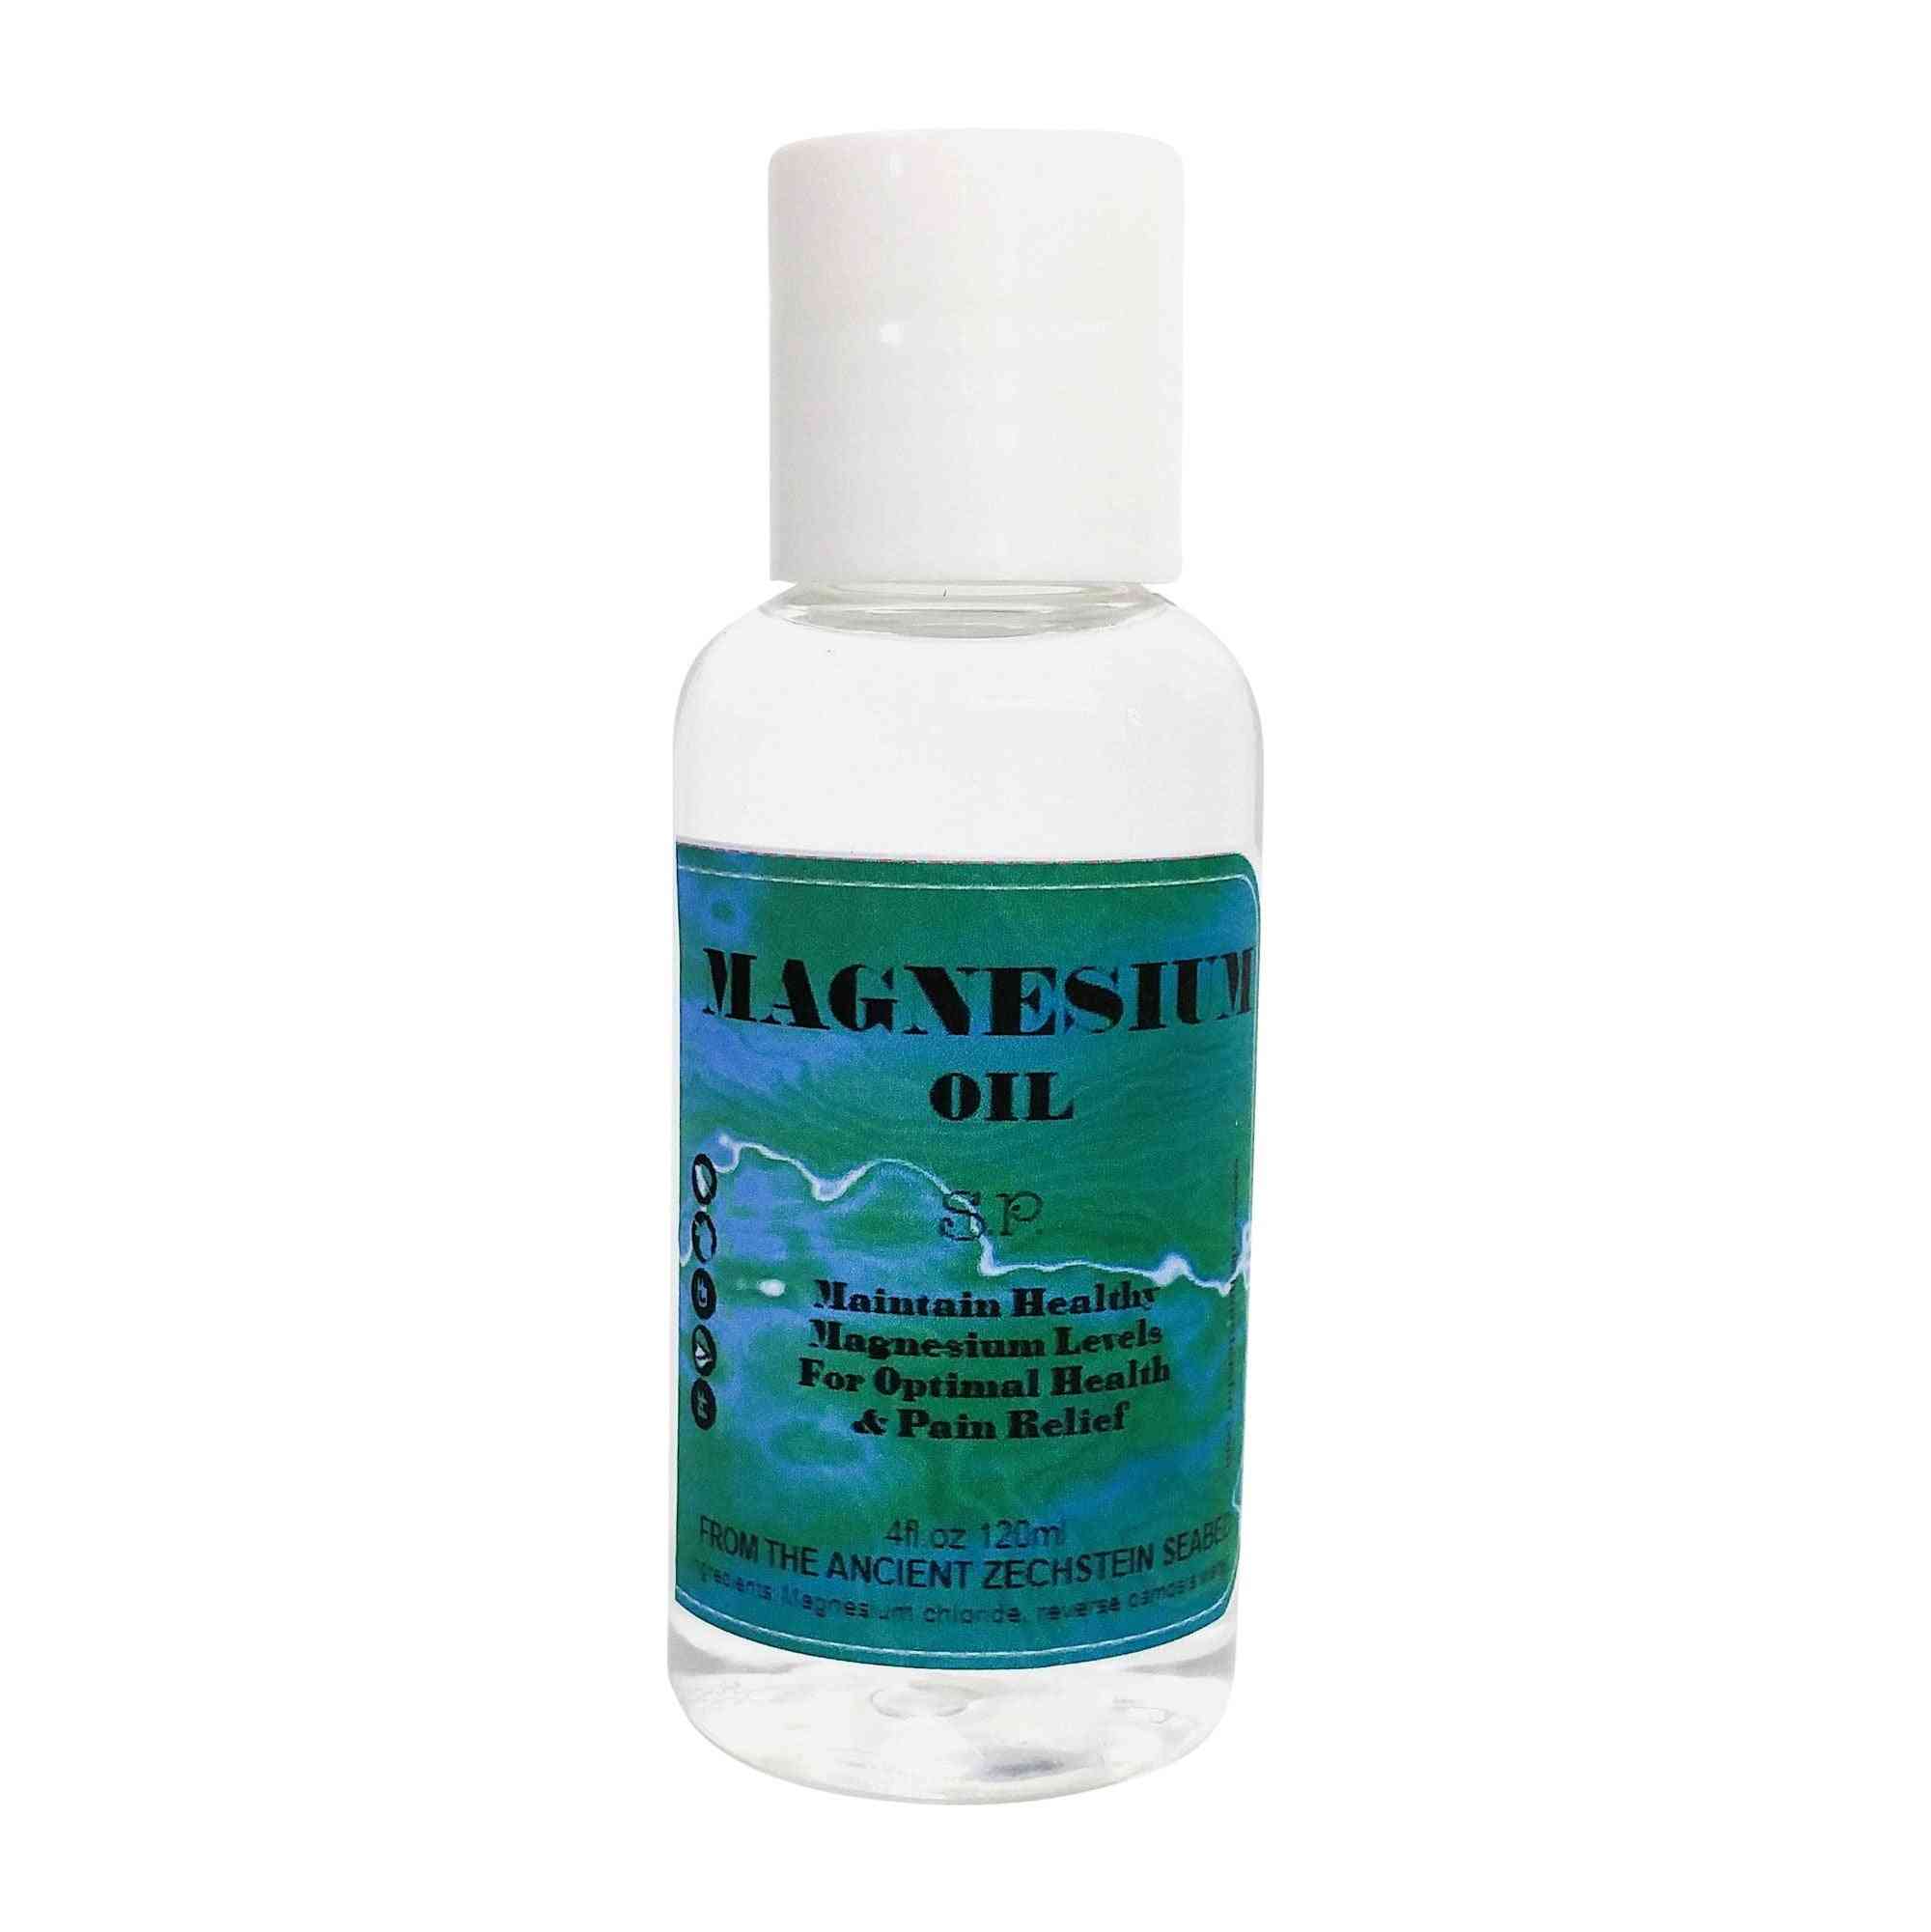 Ren magnesiumolja spray-lindrar smärta, kramper och muskelspasmer